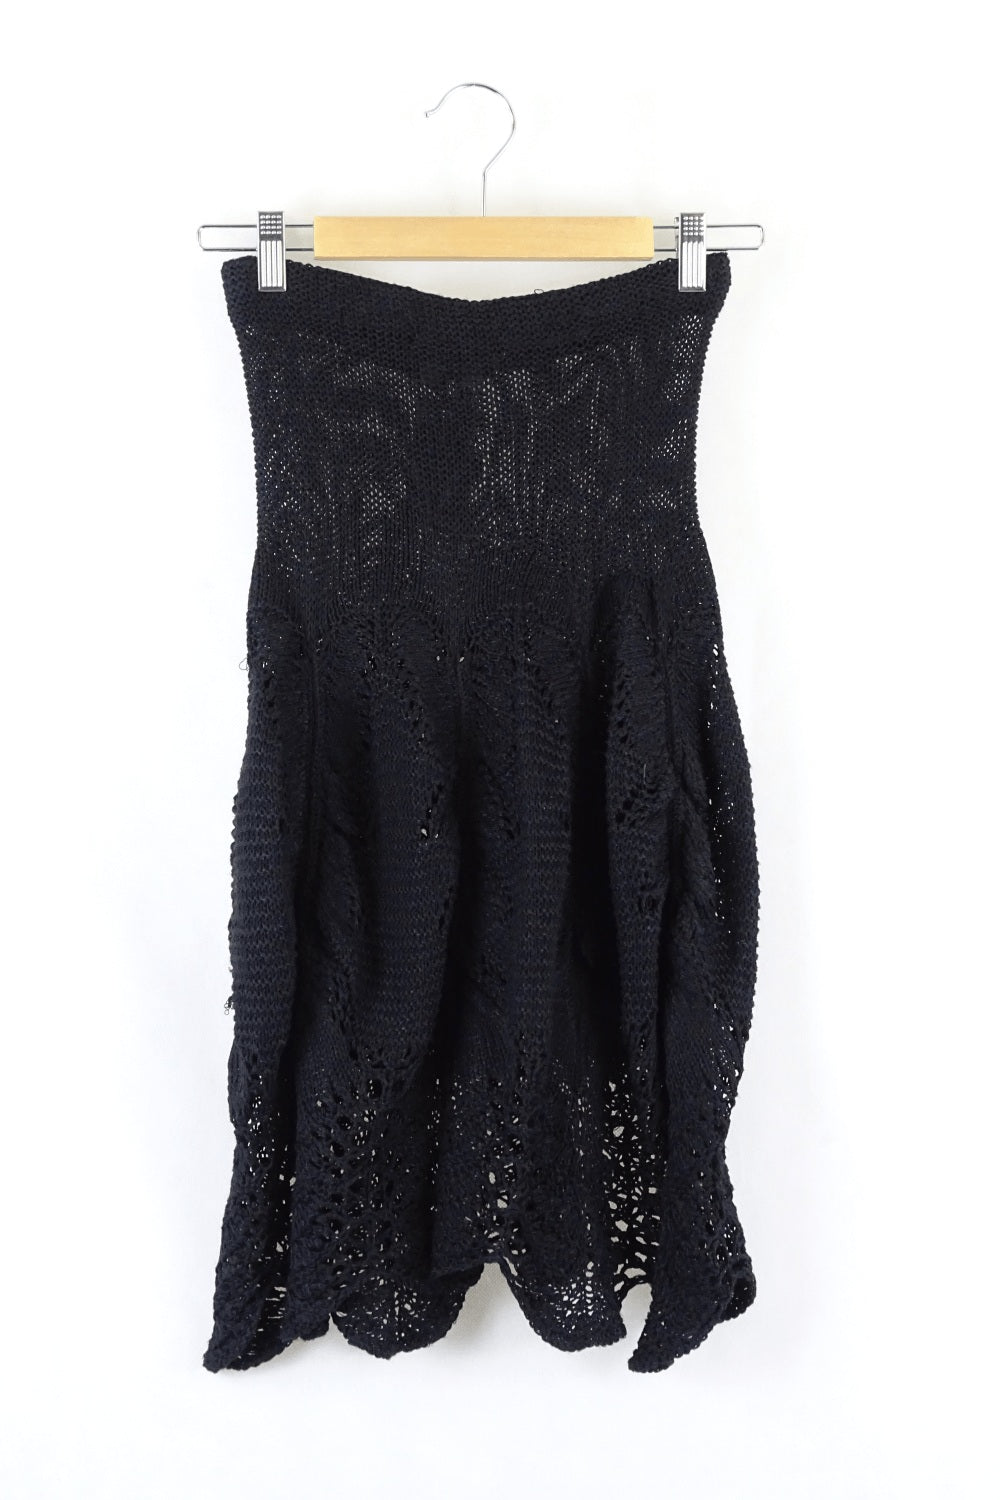 T.L Woods Black Knit Dress